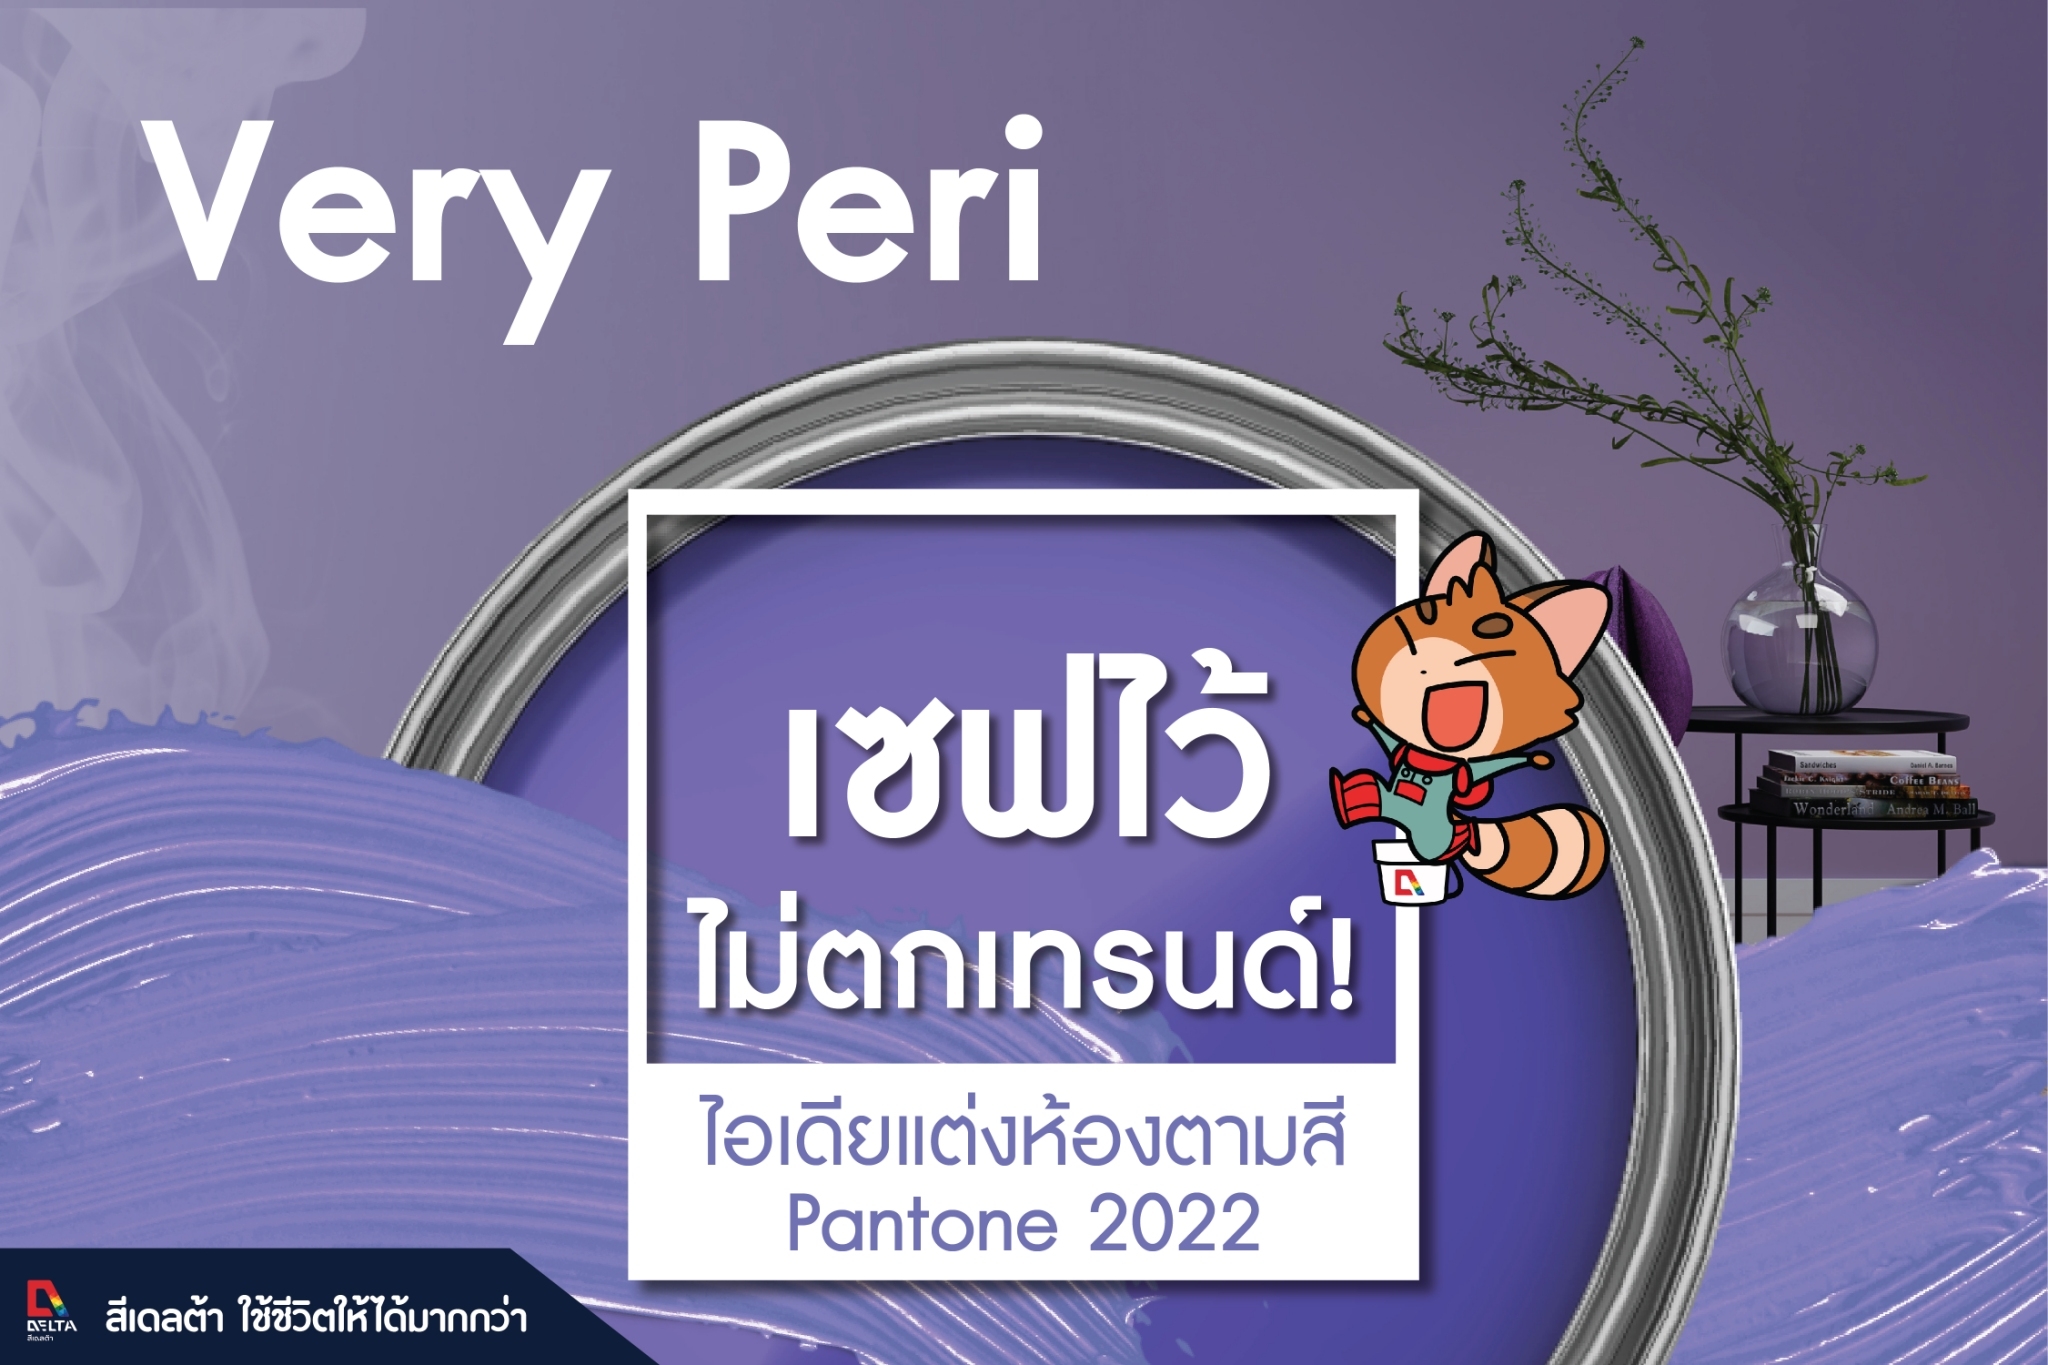 สีแห่งปี 2022 “Very Peri” โทนสีม่วงอมน้ำเงิน #สีเดลต้า #ไม่ตกเทรน